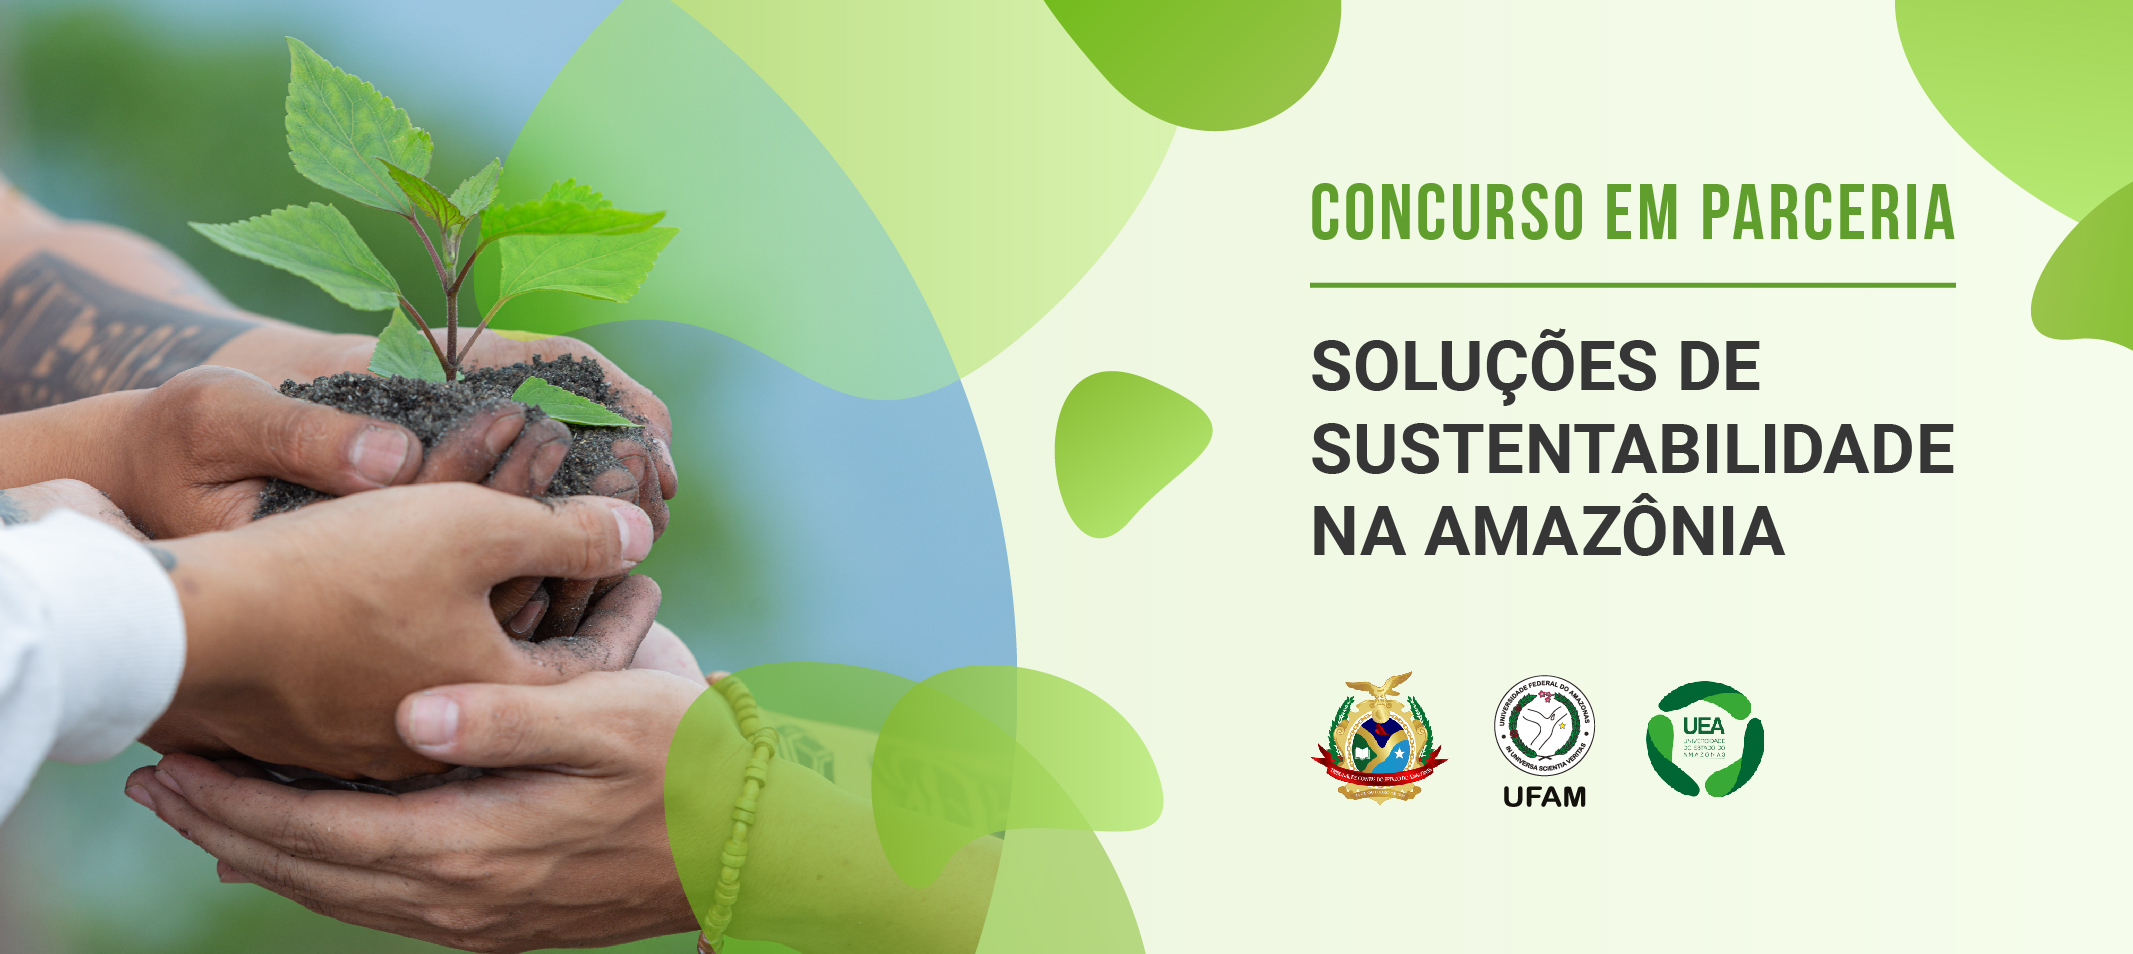 Ufam, TCE e UEA unem esforços em prol da sustentabilidade na Amazônia